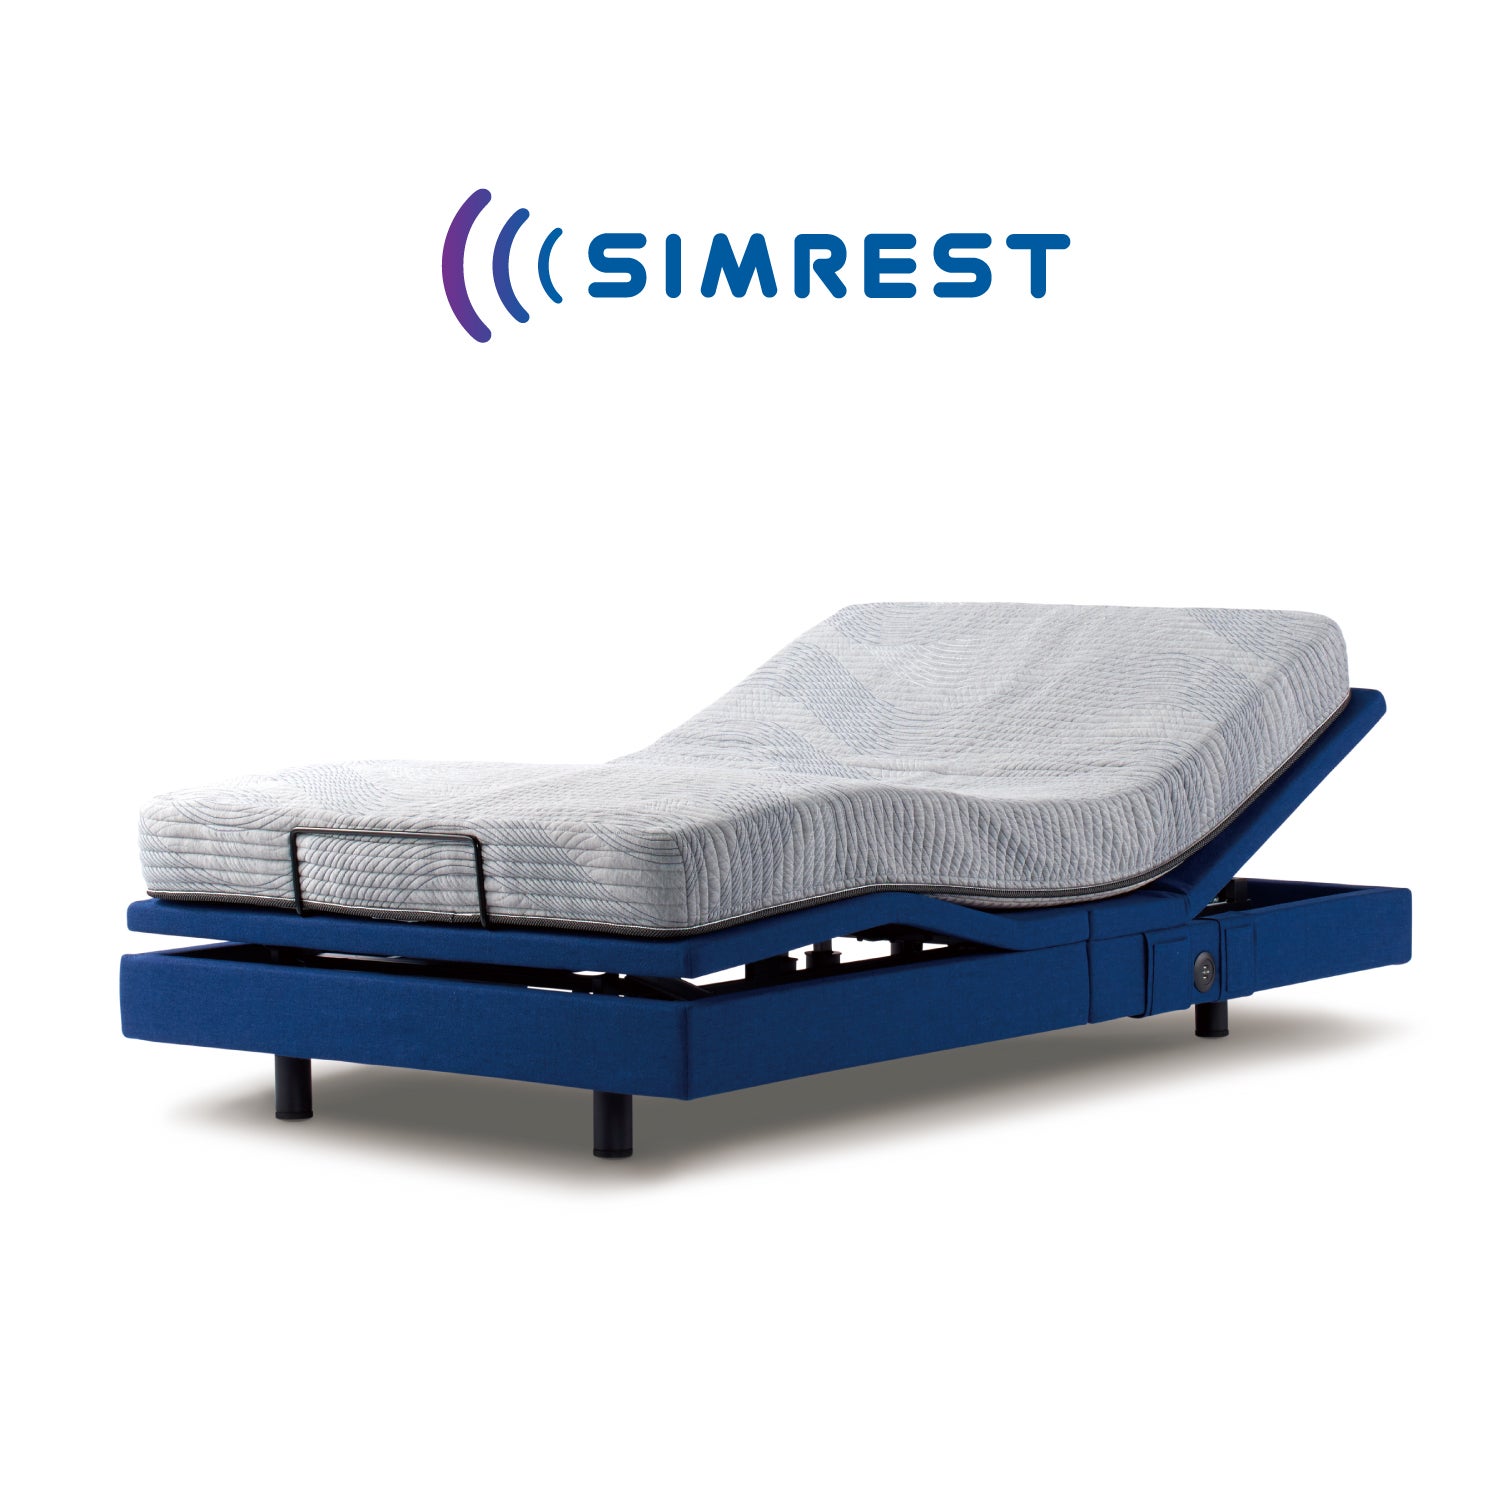 新商品『シムレスト』
次世代型マルチ機能付き電動ベッド